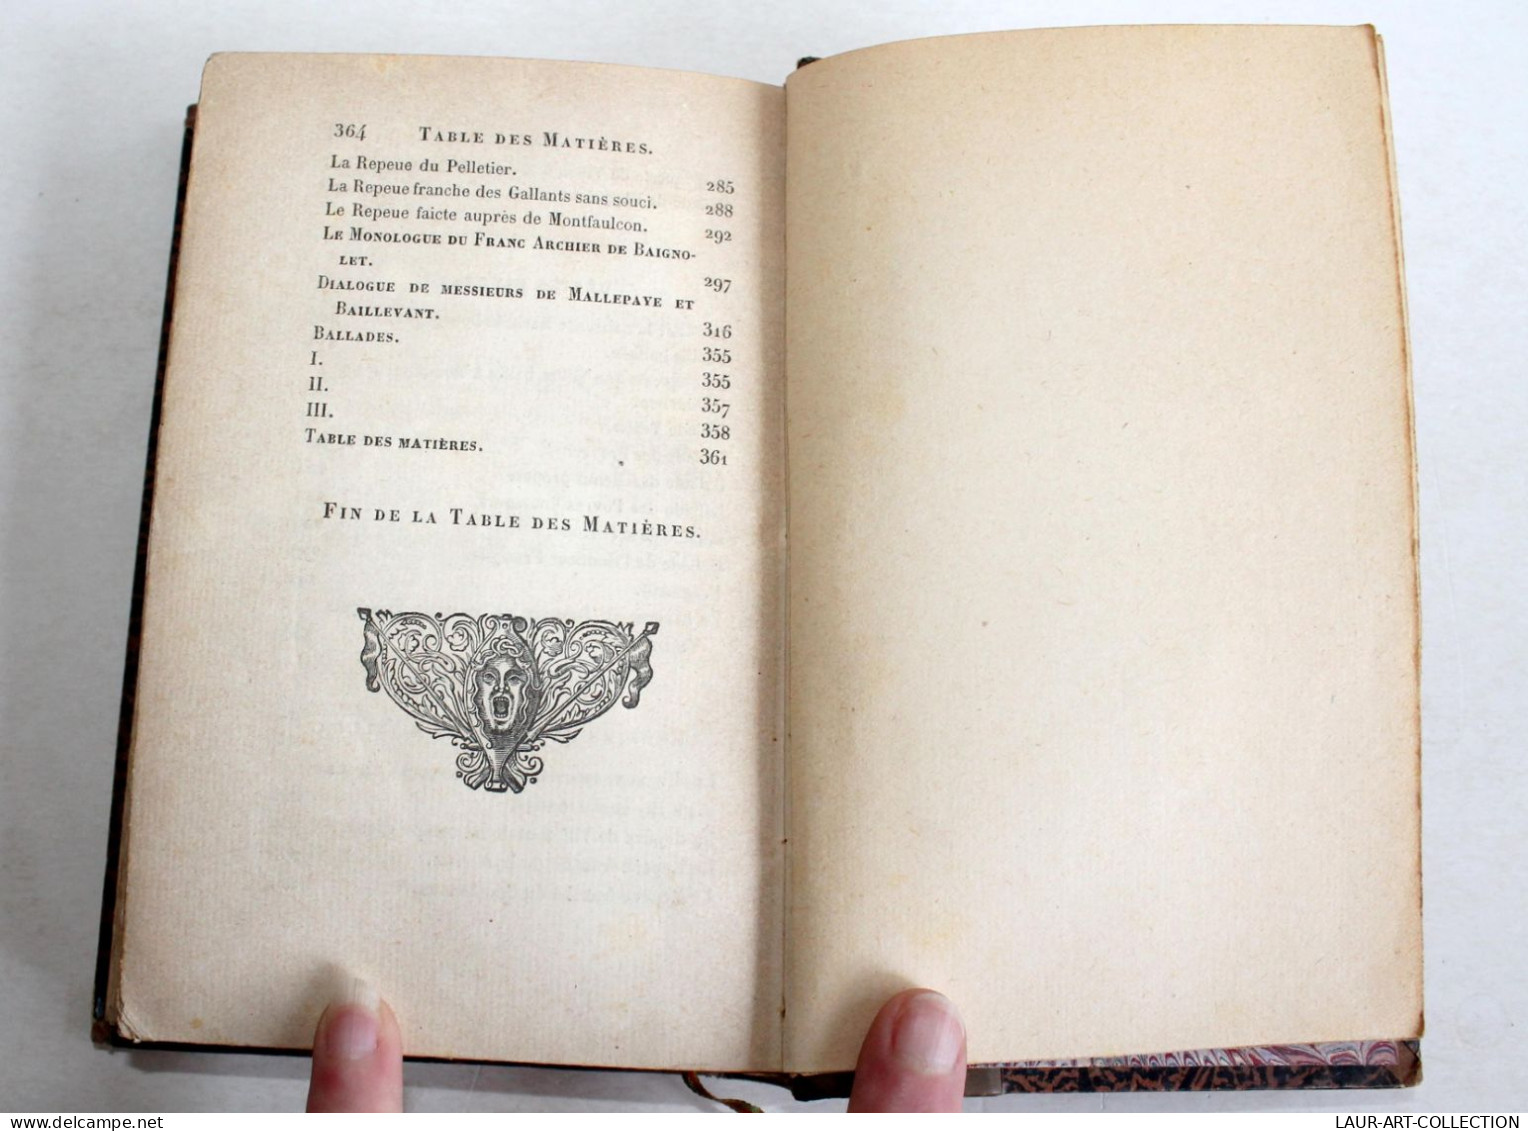 OEUVRES COMPLETES DE FRANCOIS VILLON, NOUVELLE EDITION + NOTES par PL JACOB 1854 / ANCIEN LIVRE XIVe SIECLE (2603.65)